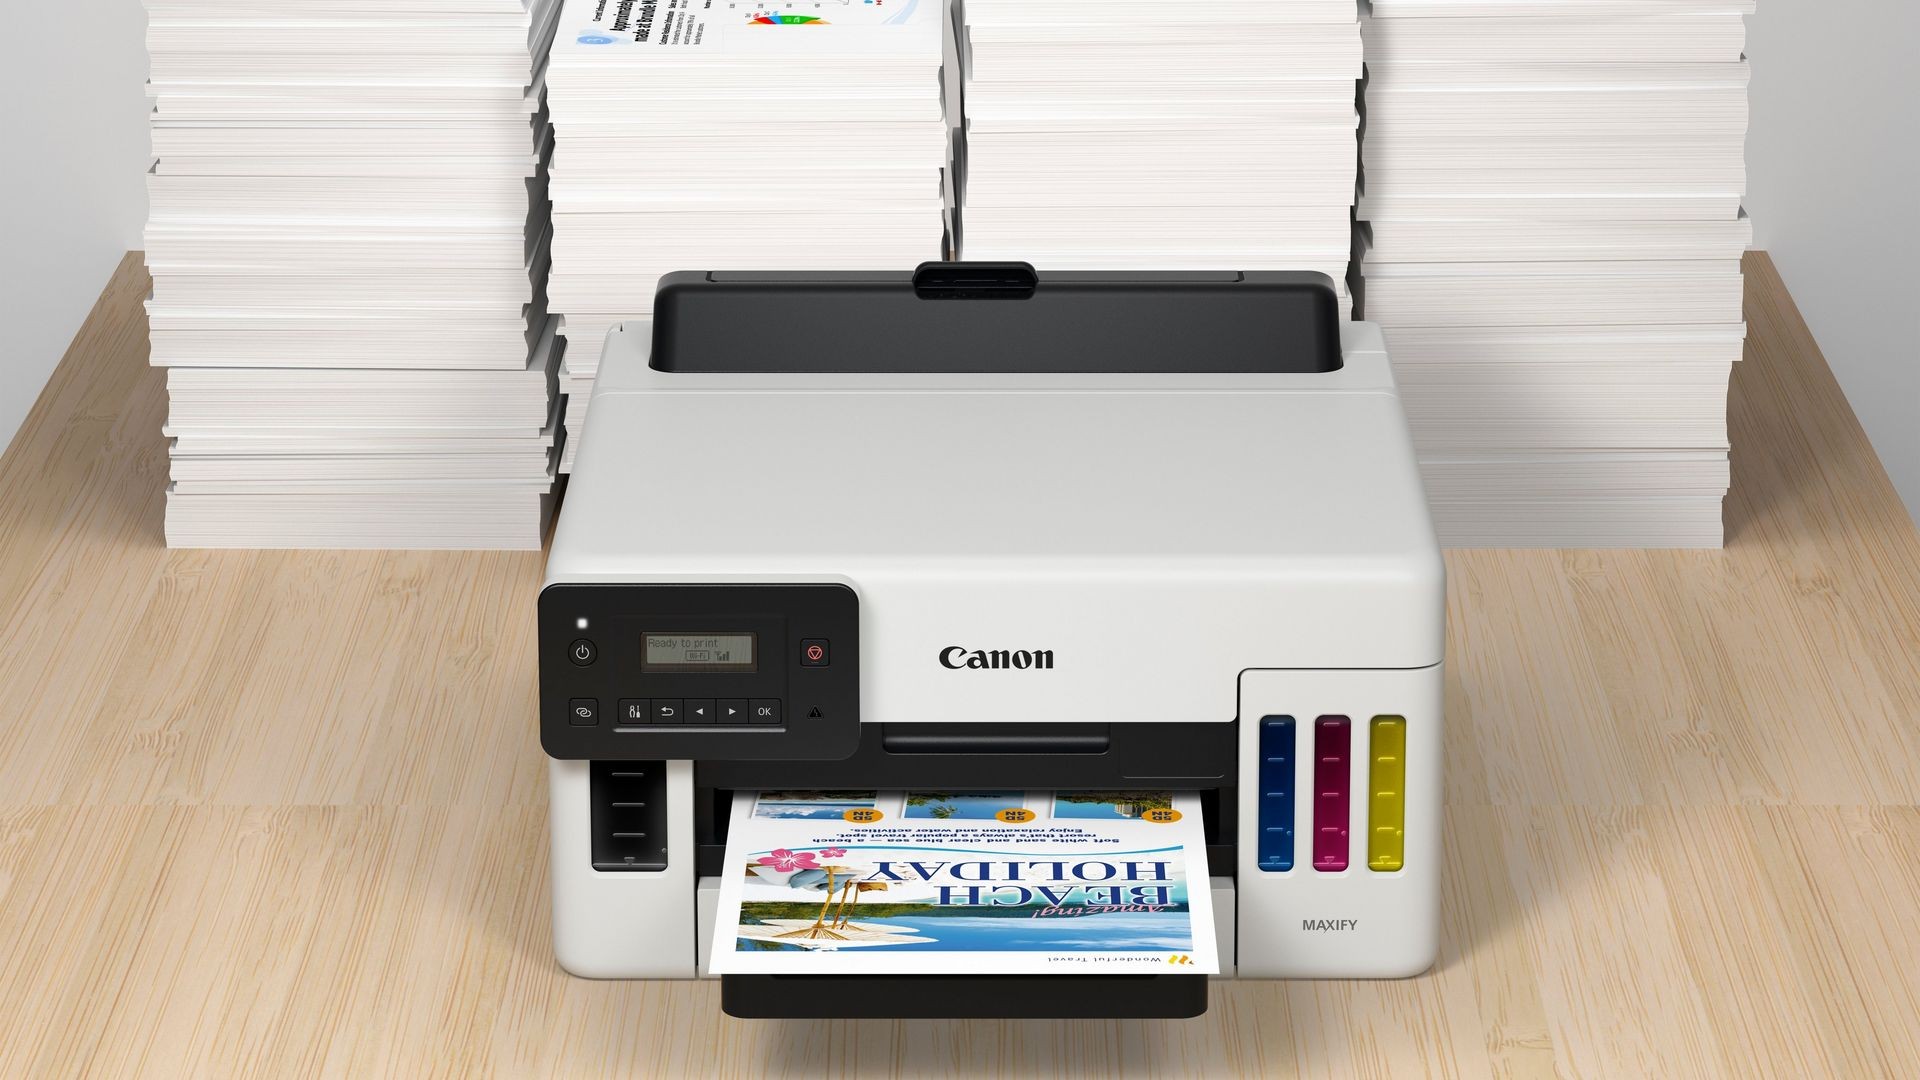 impresoras y scanners - CANON GX5010 MAXIFY, INALÁMBRICA MEGATANK, ALTA PRODUCTIVIDAD DE IMPRESIÓN 1